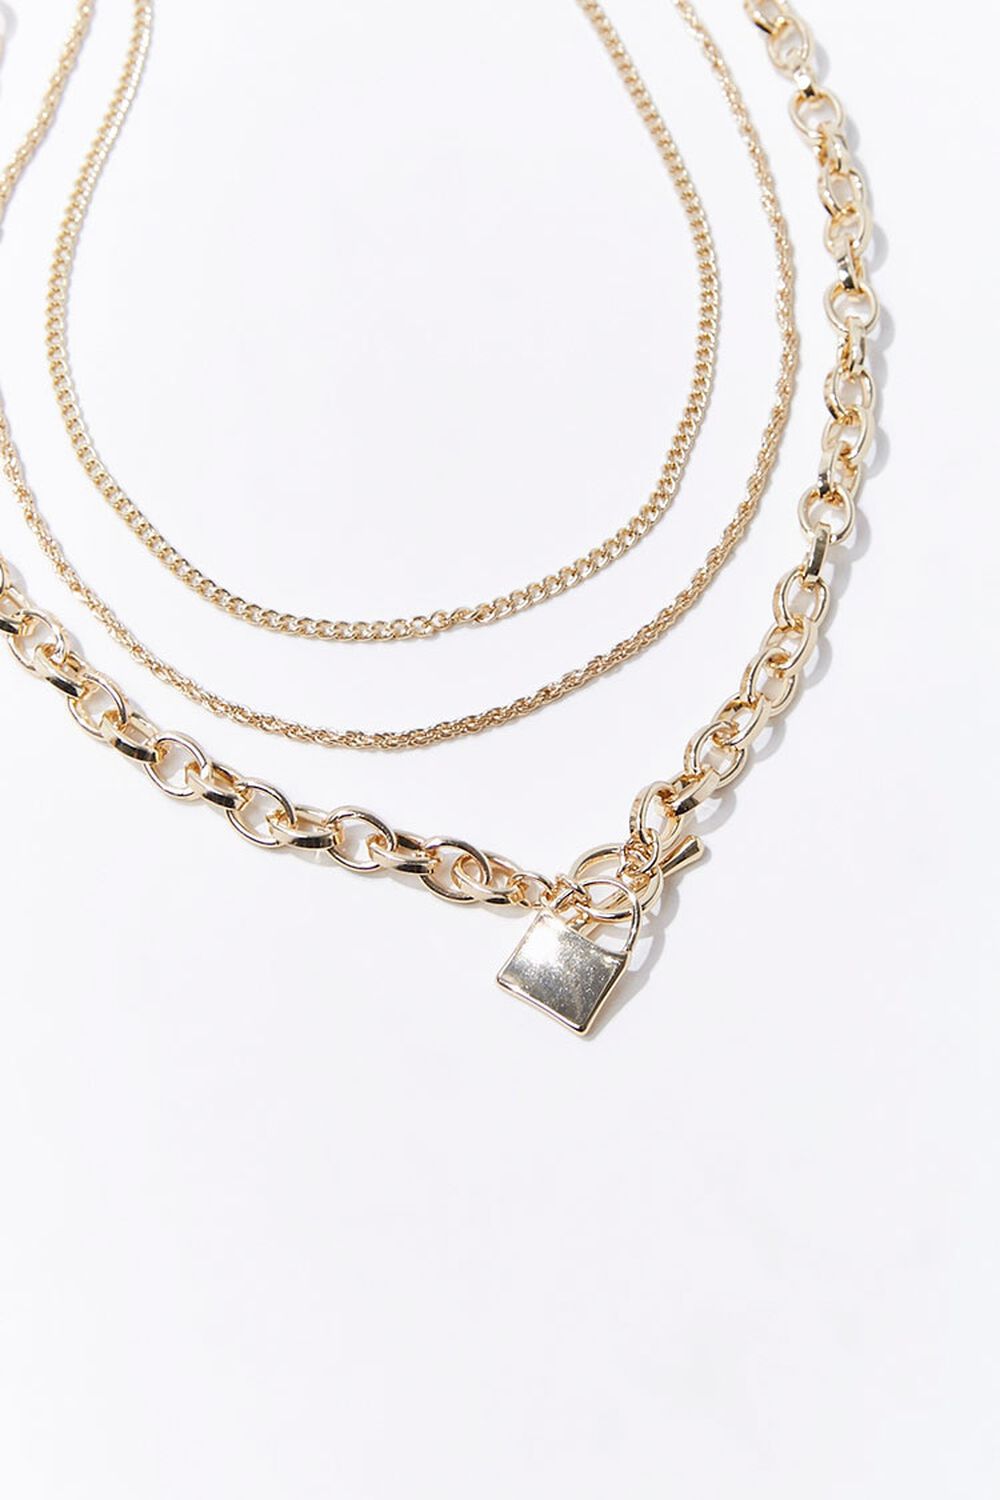 GOLD Upcycled Lock Necklace Set, image 1